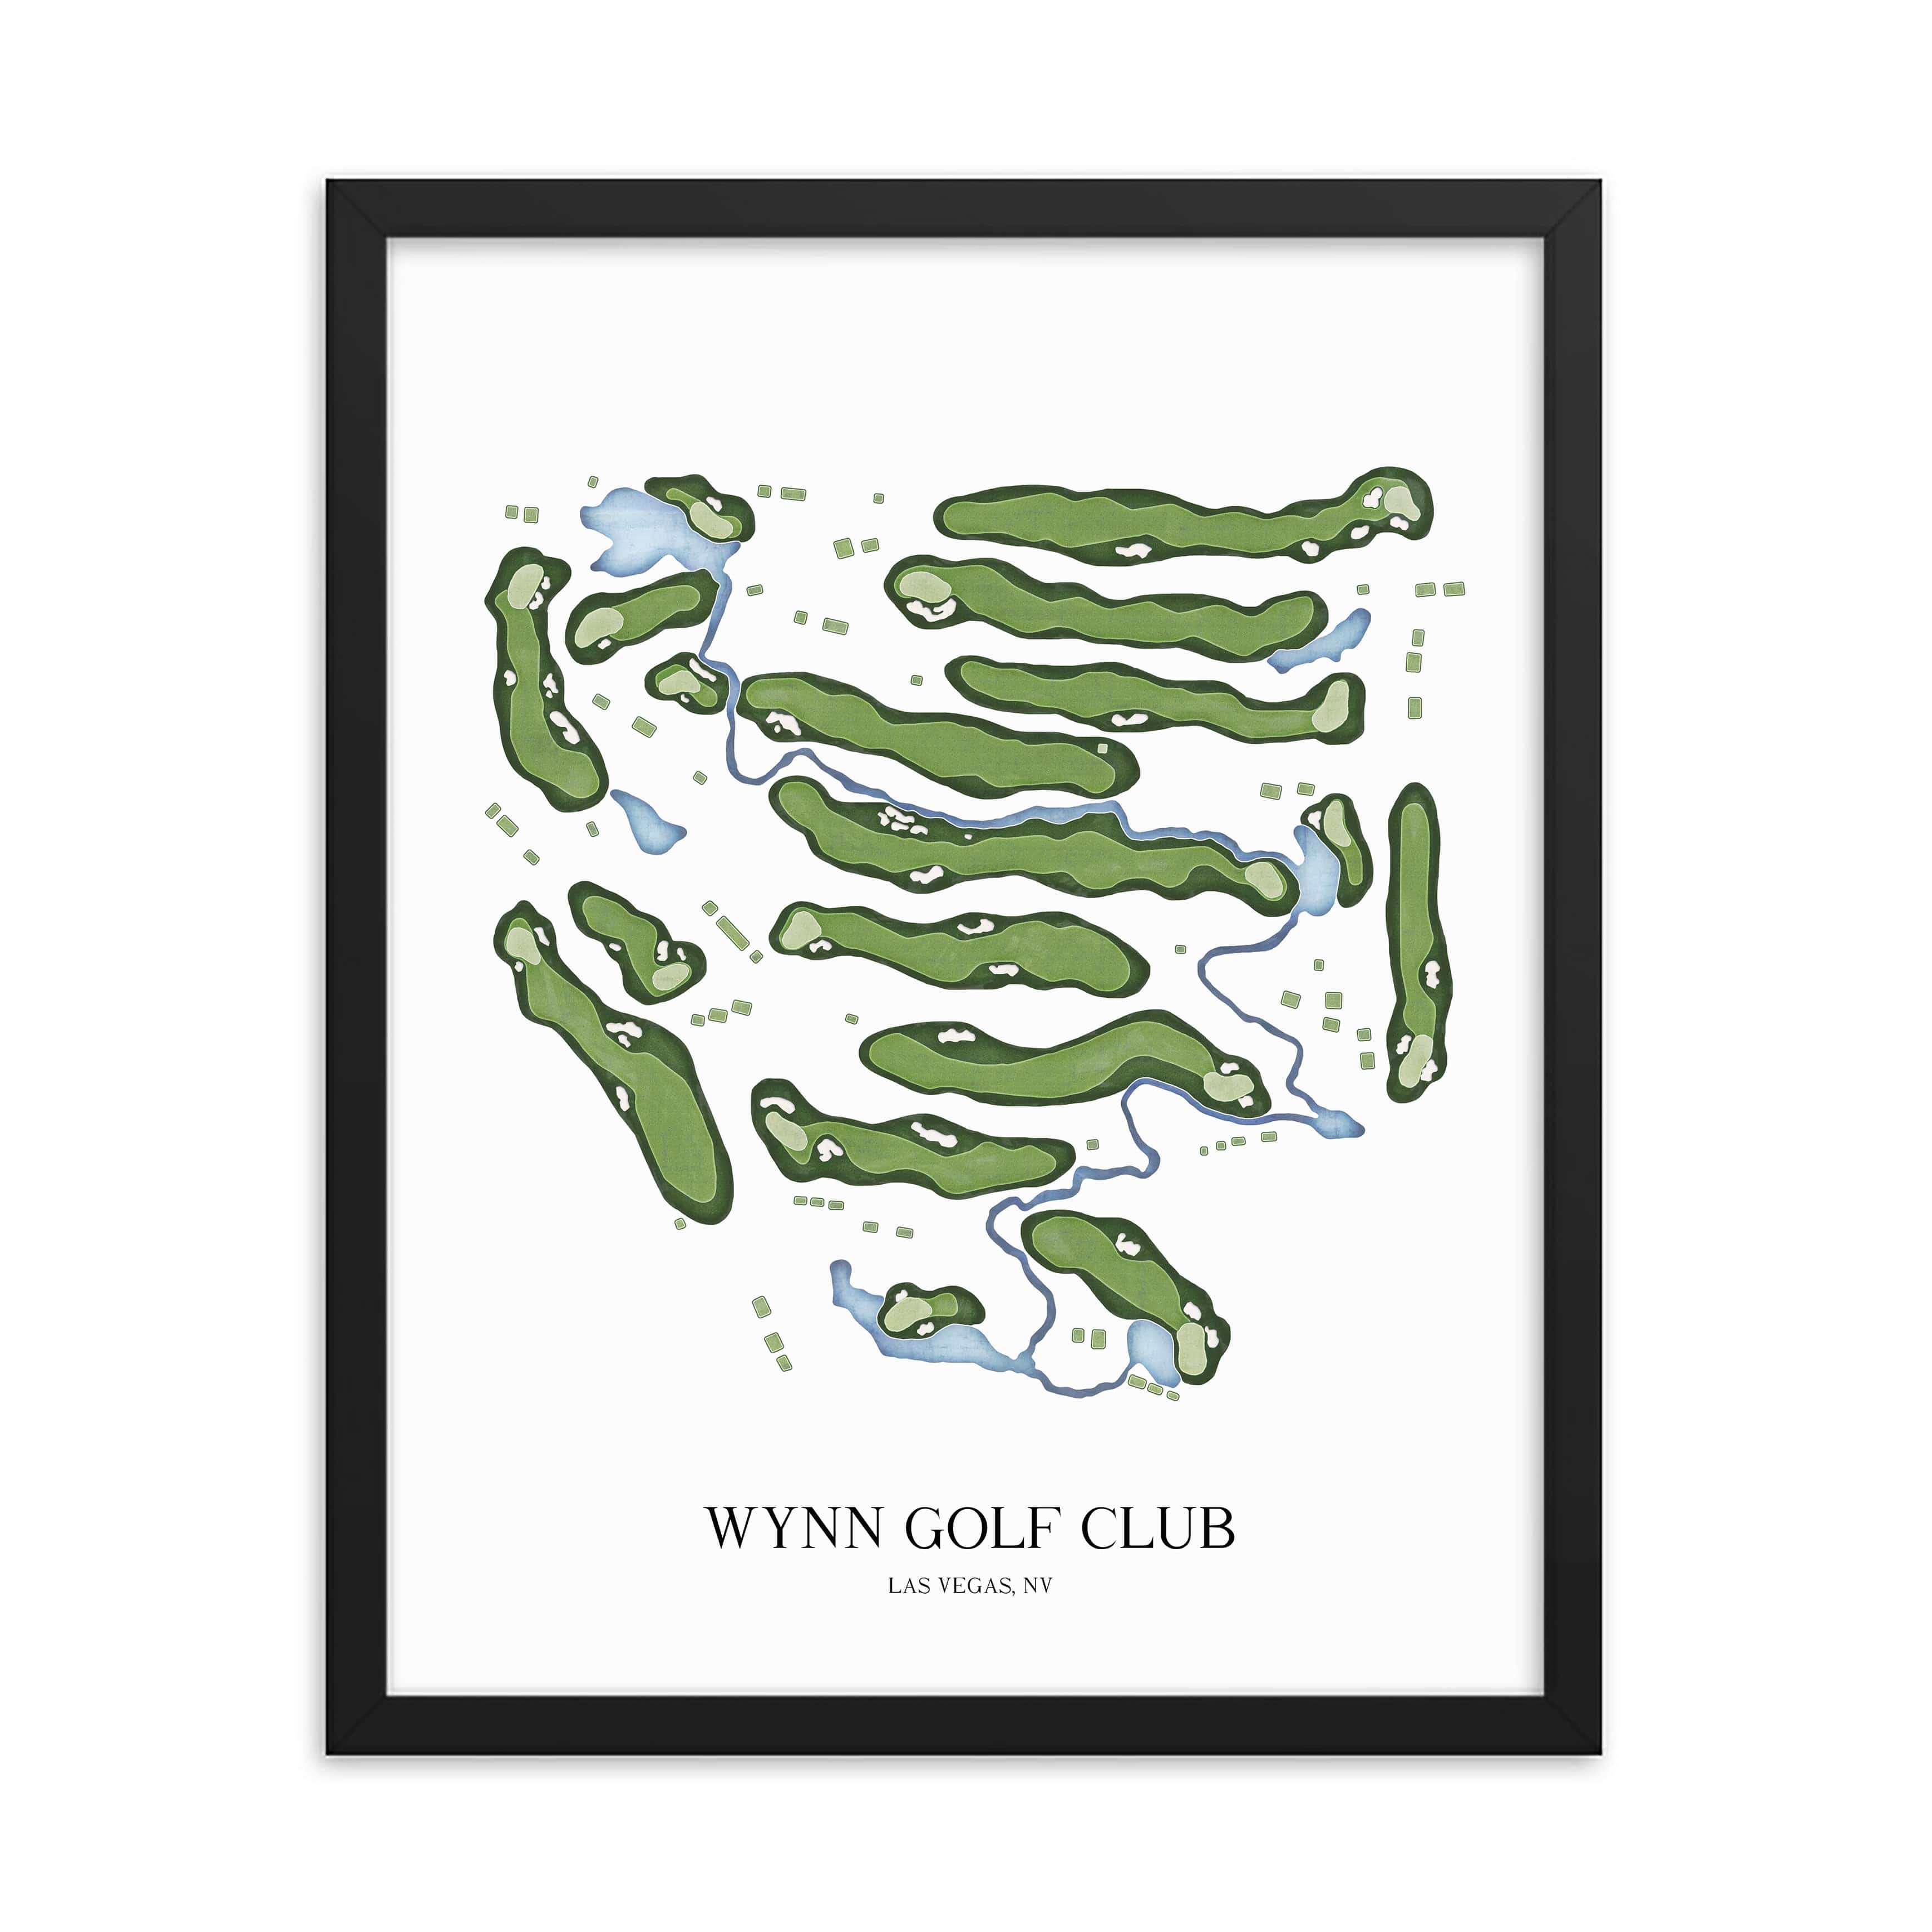 The 19th Hole Golf Shop - Golf Course Prints -  Wynn Golf Club Golf Course Map